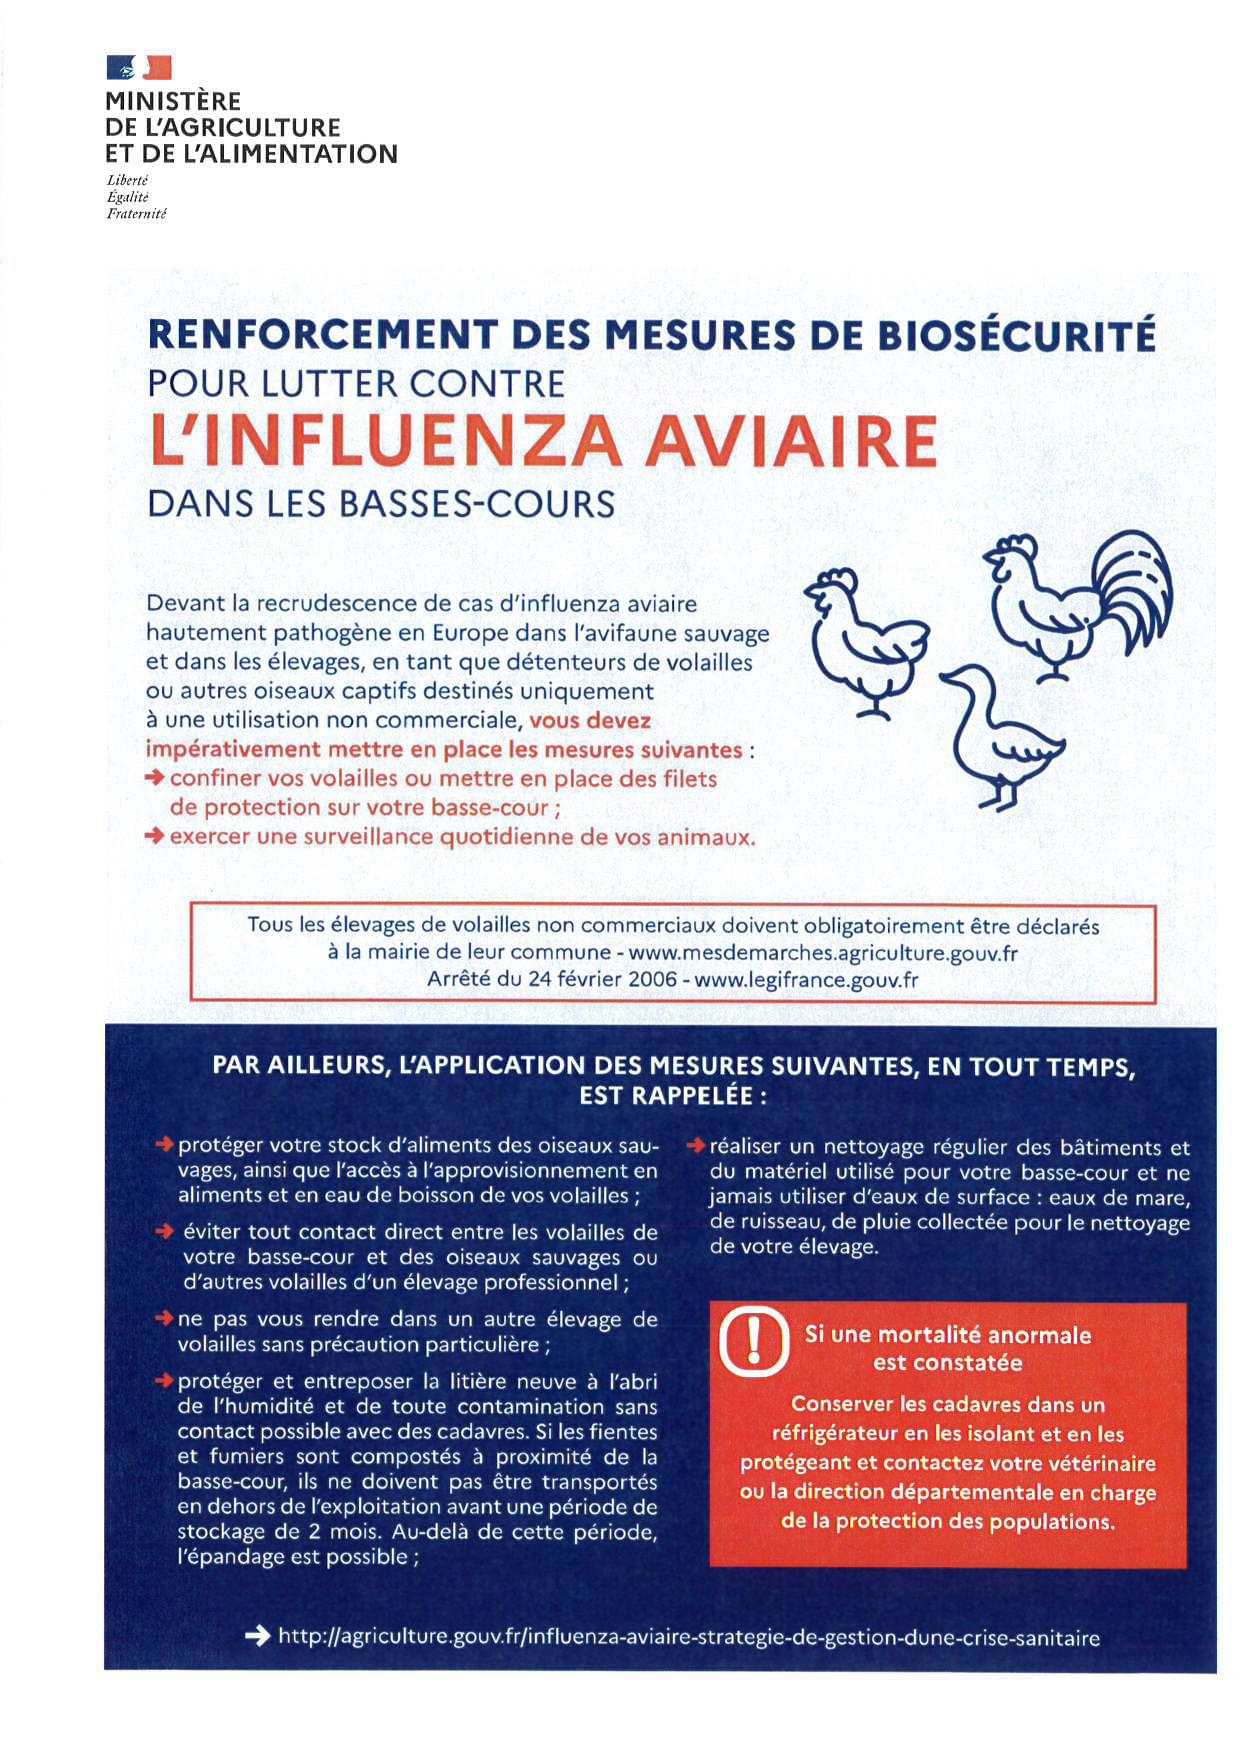 Influenza aviaire dans les basse-cours : renforcement des mesures de biosécurité